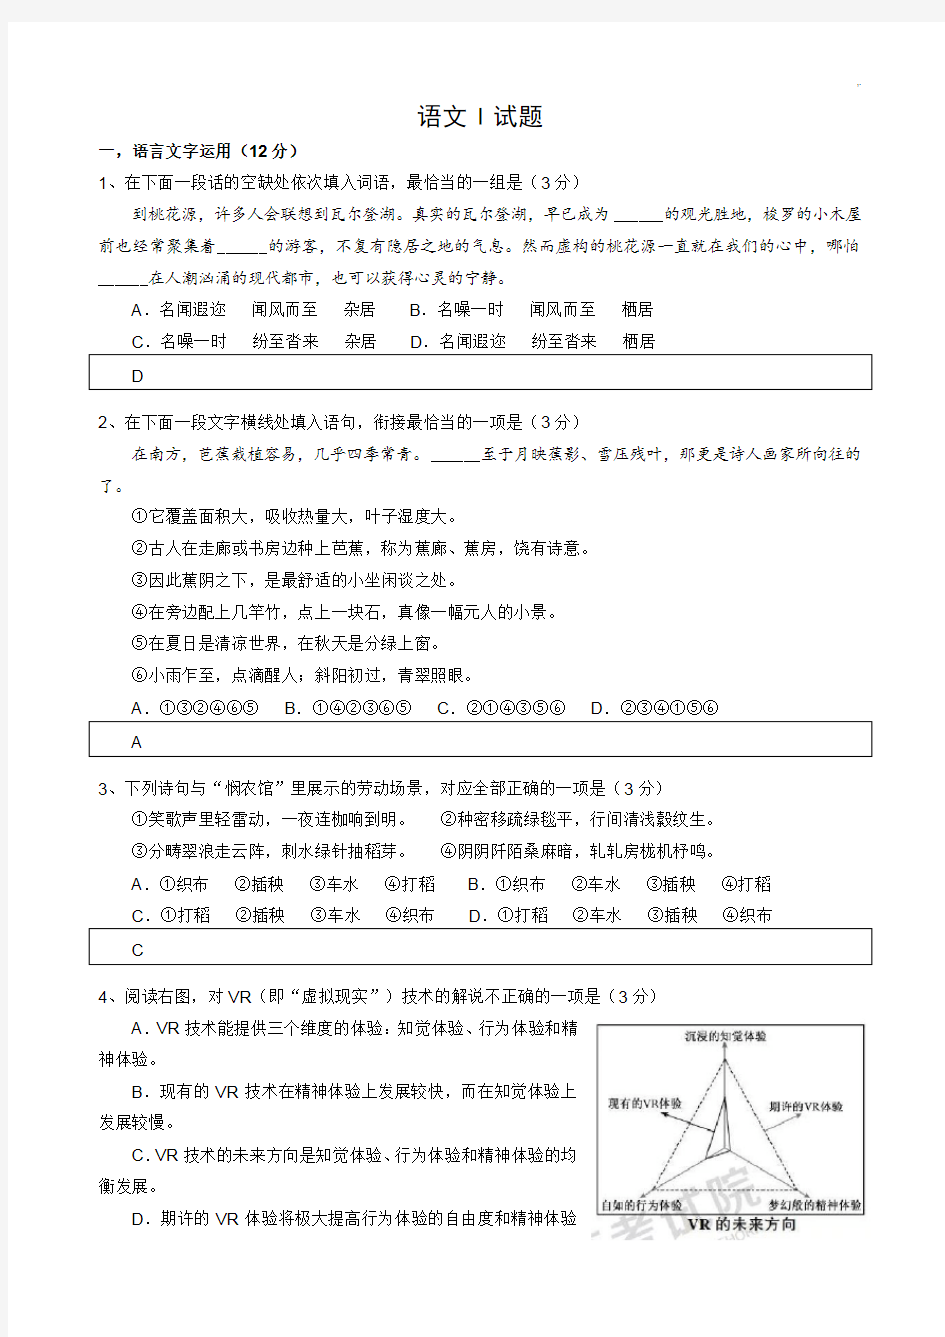 2019年度江苏高考语文试题与标准答案